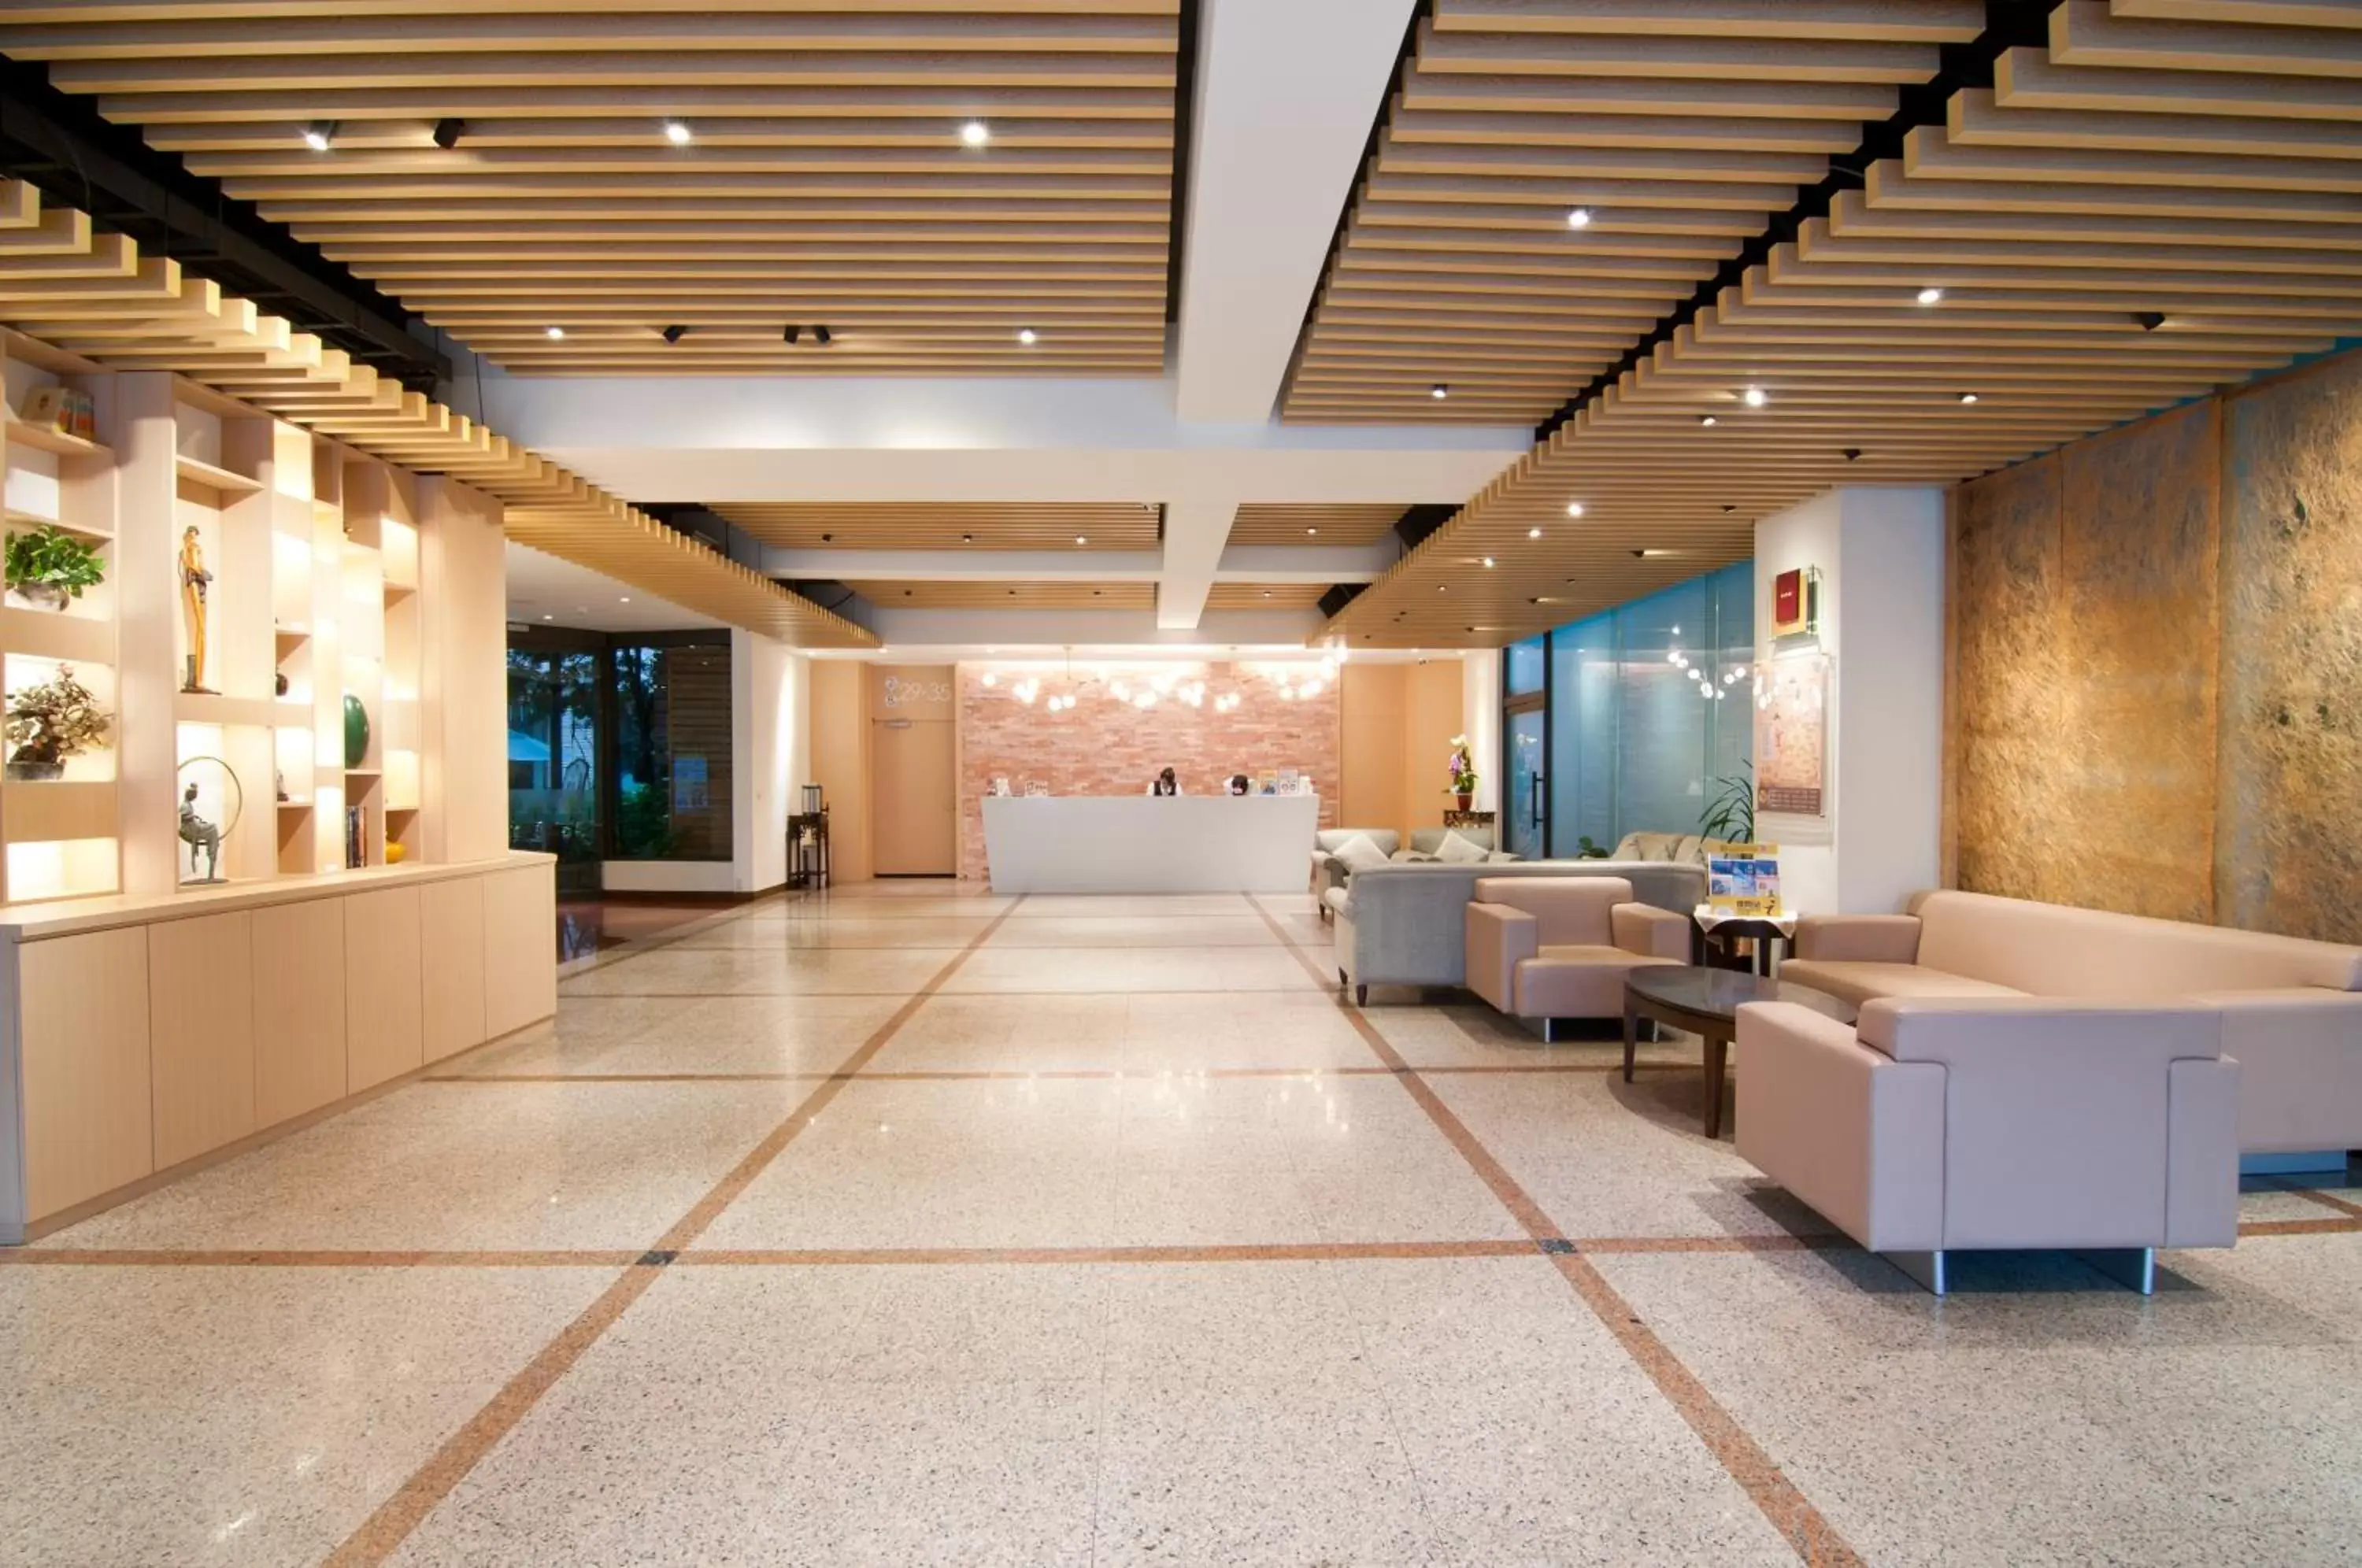 Lobby or reception, Lobby/Reception in Liga Hotel